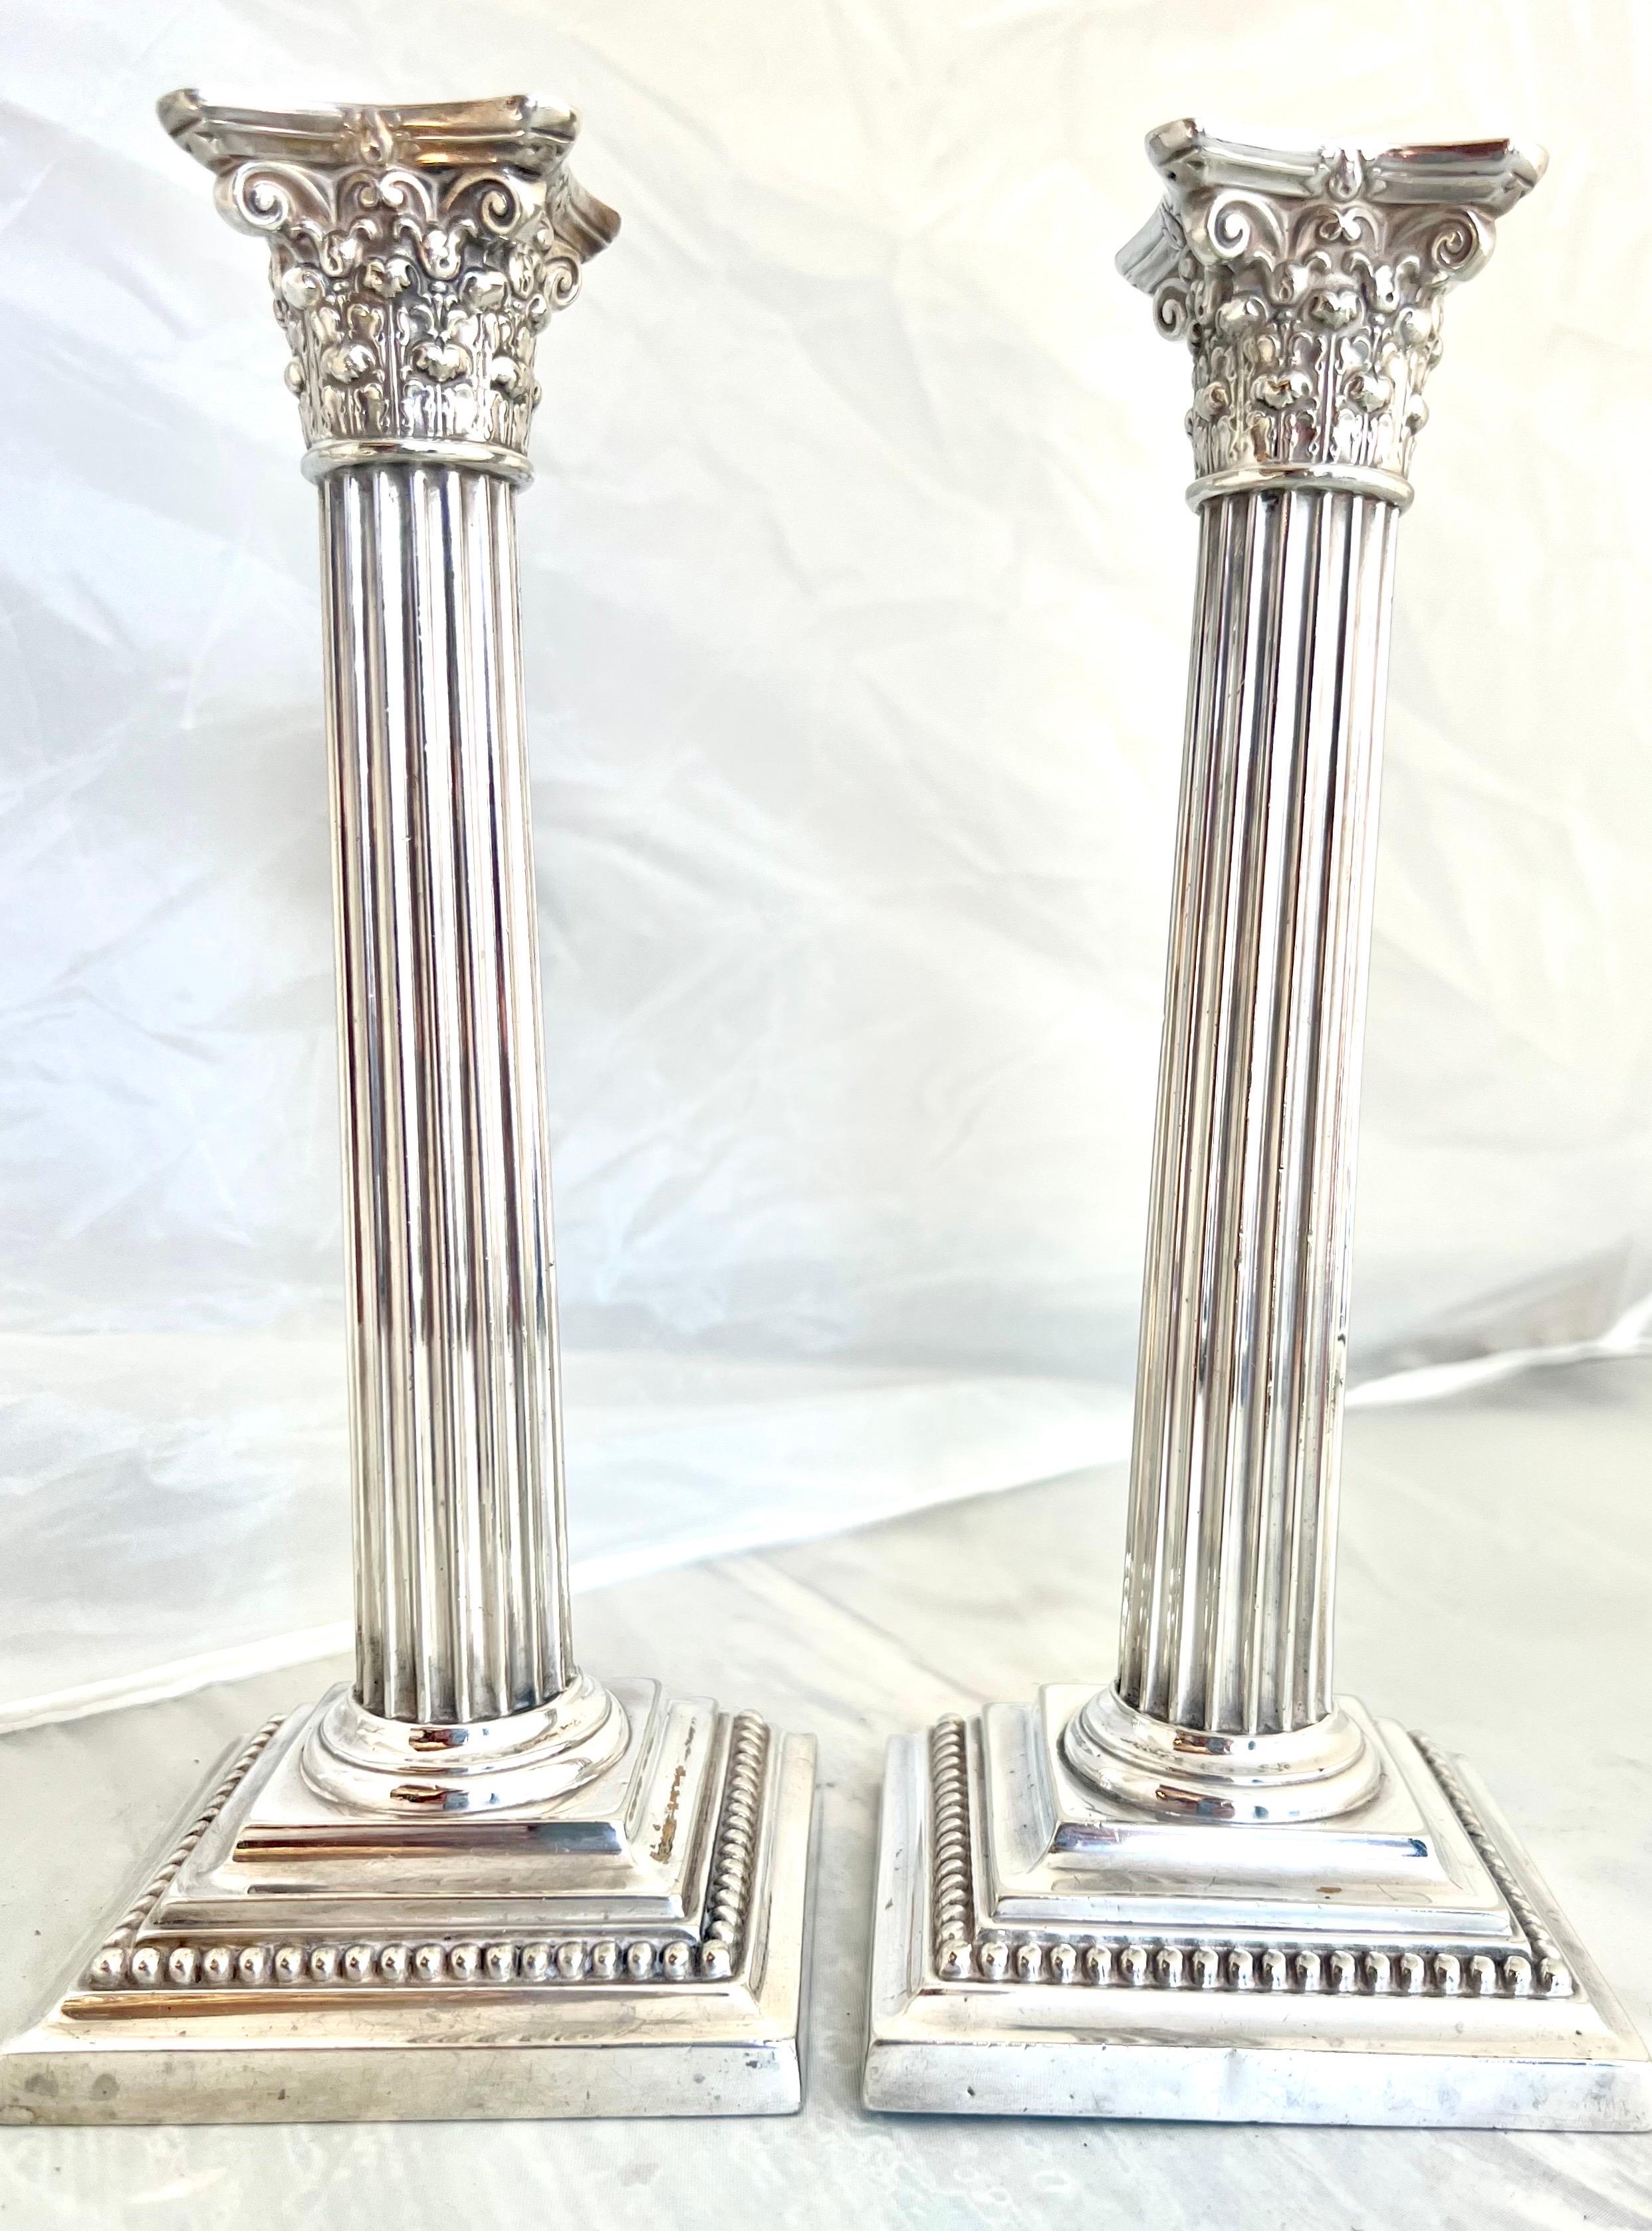 La paire de chandeliers en métal argenté de Gorham en forme de colonnes avec des chapiteaux corinthiens et des dessus amovibles, avec de fins détails perlés, illustre l'artisanat et le souci du détail caractéristiques des pièces de Gorham.  Les